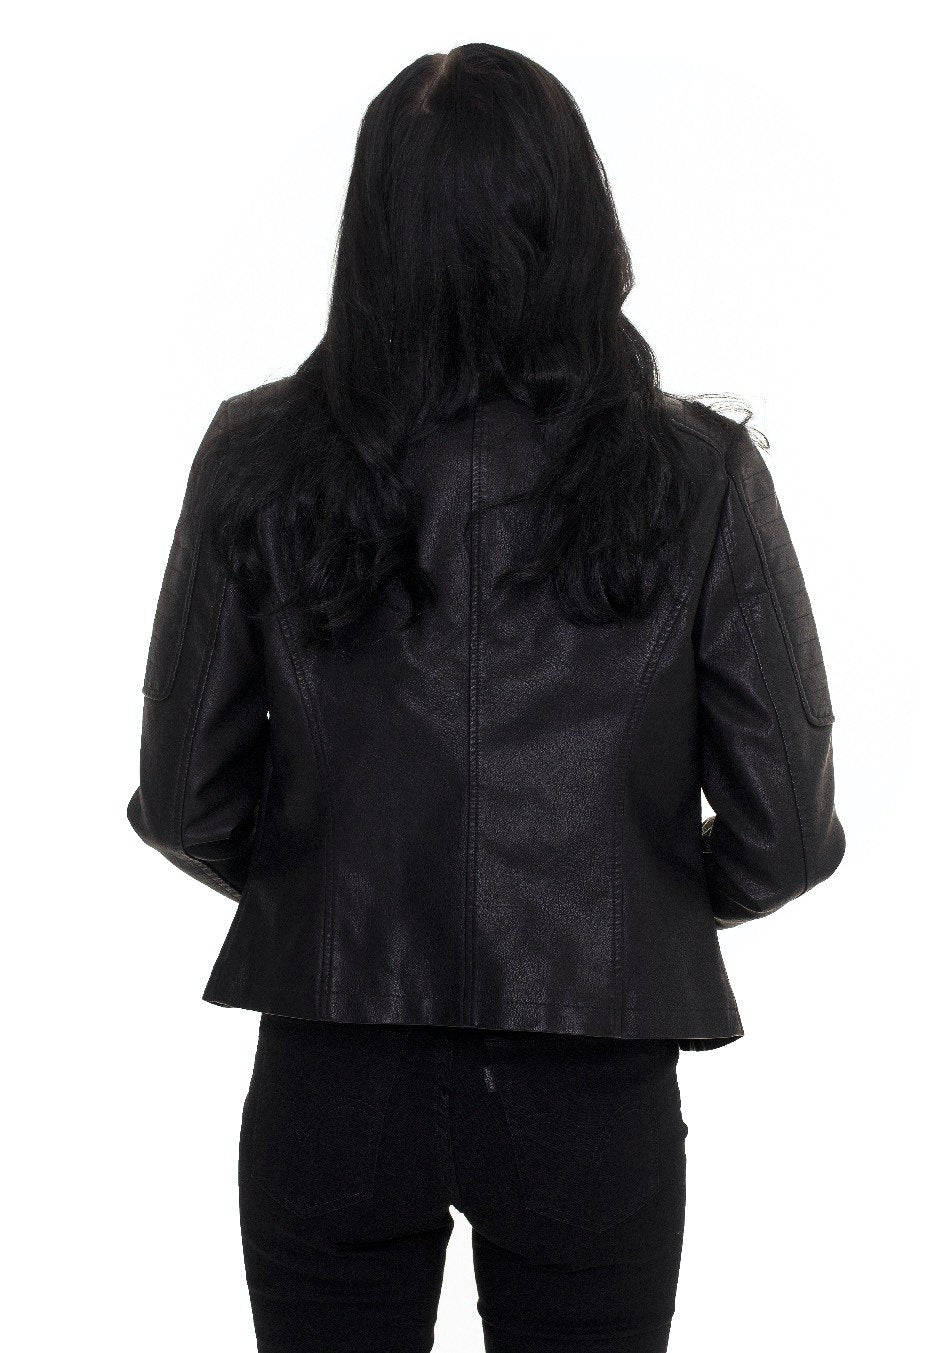 Noisy May - Rebel Black - Leather Jacket